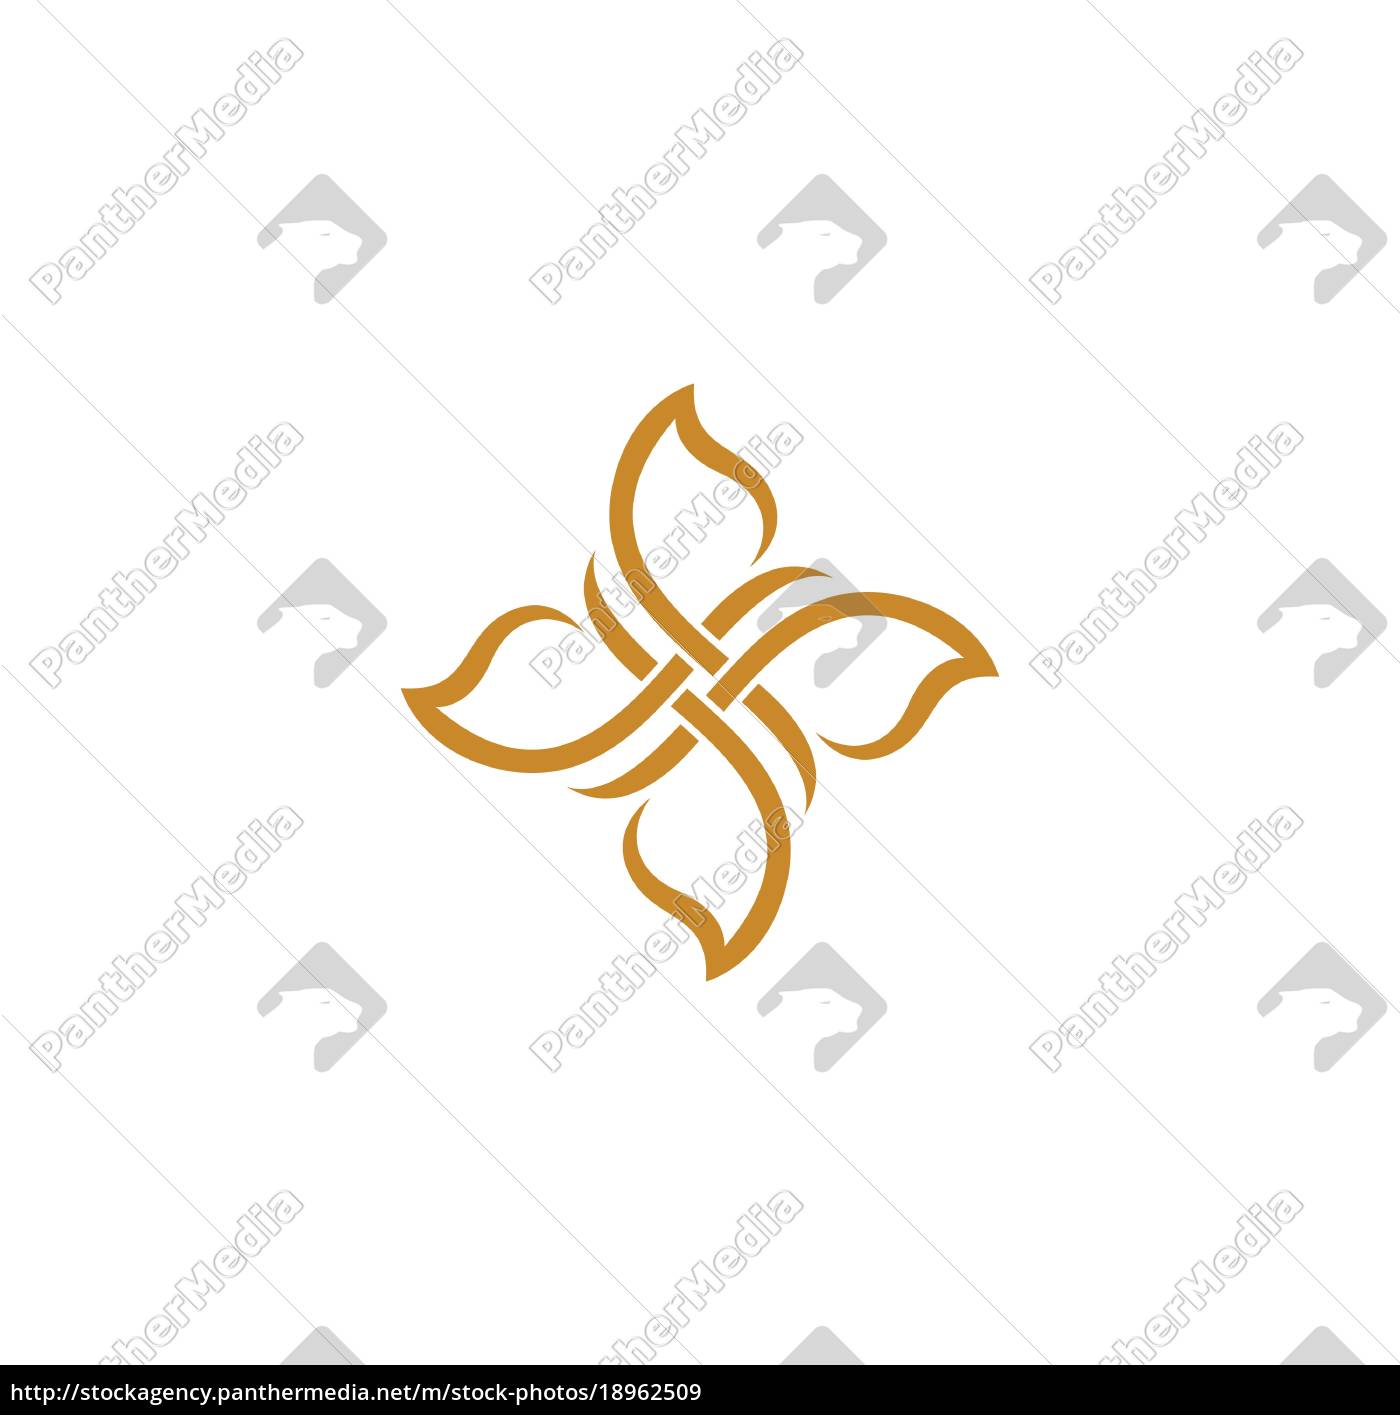 Schonheit Vektor Blumen Design Logo Vorlage Symbol Lizenzfreies Bild Bildagentur Panthermedia